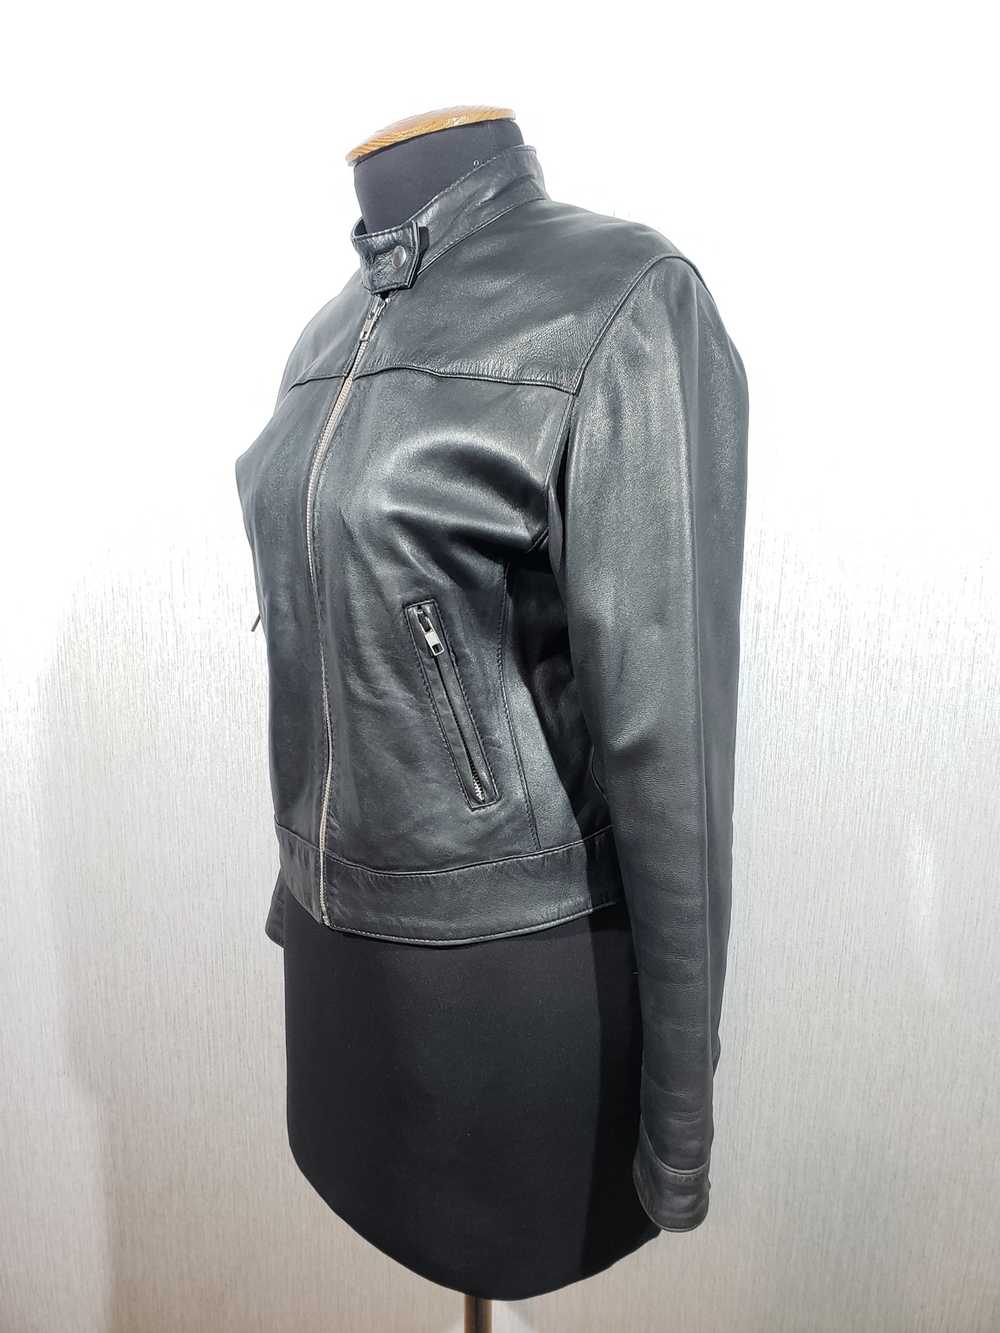 Designer × Leather Jacket Black women's sports ja… - image 2